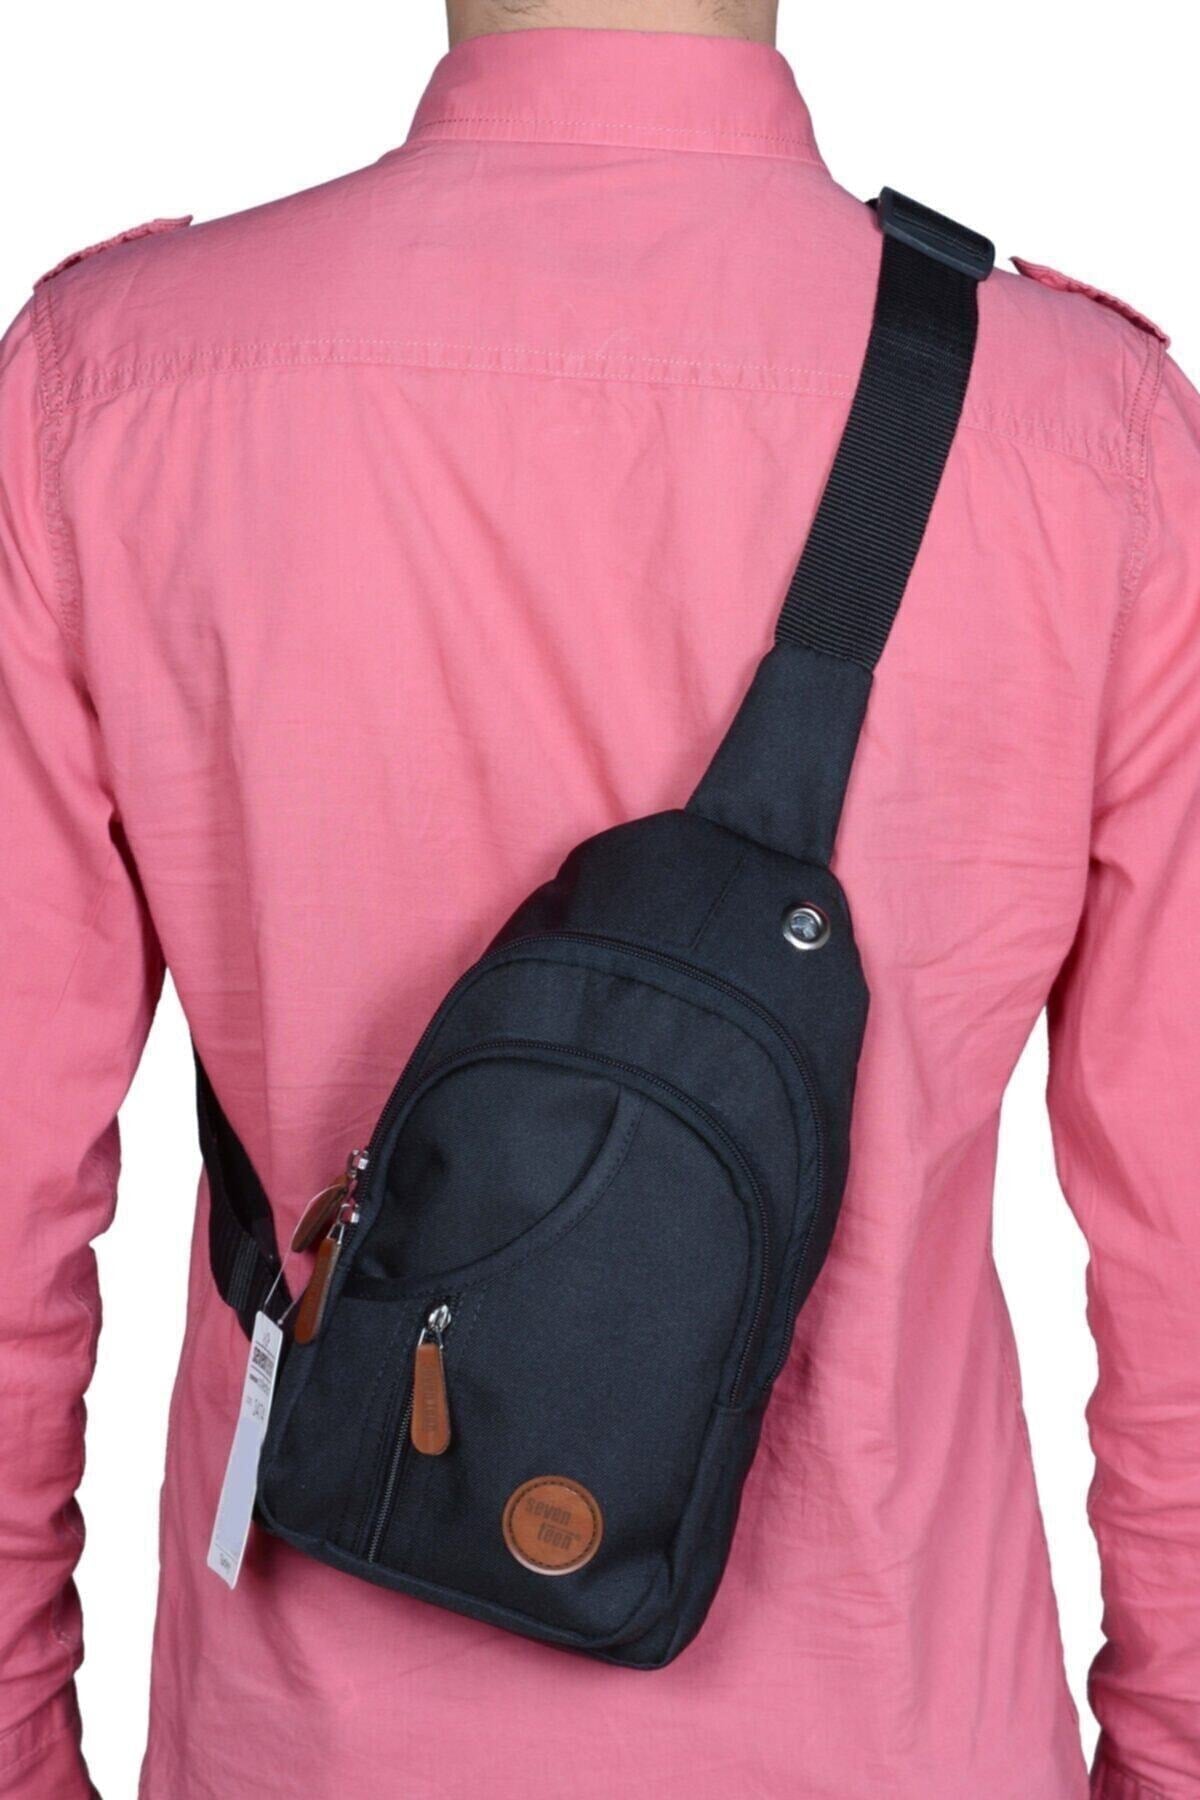 Unisex Black Cross Back And Chest Bag Bodybag Bag